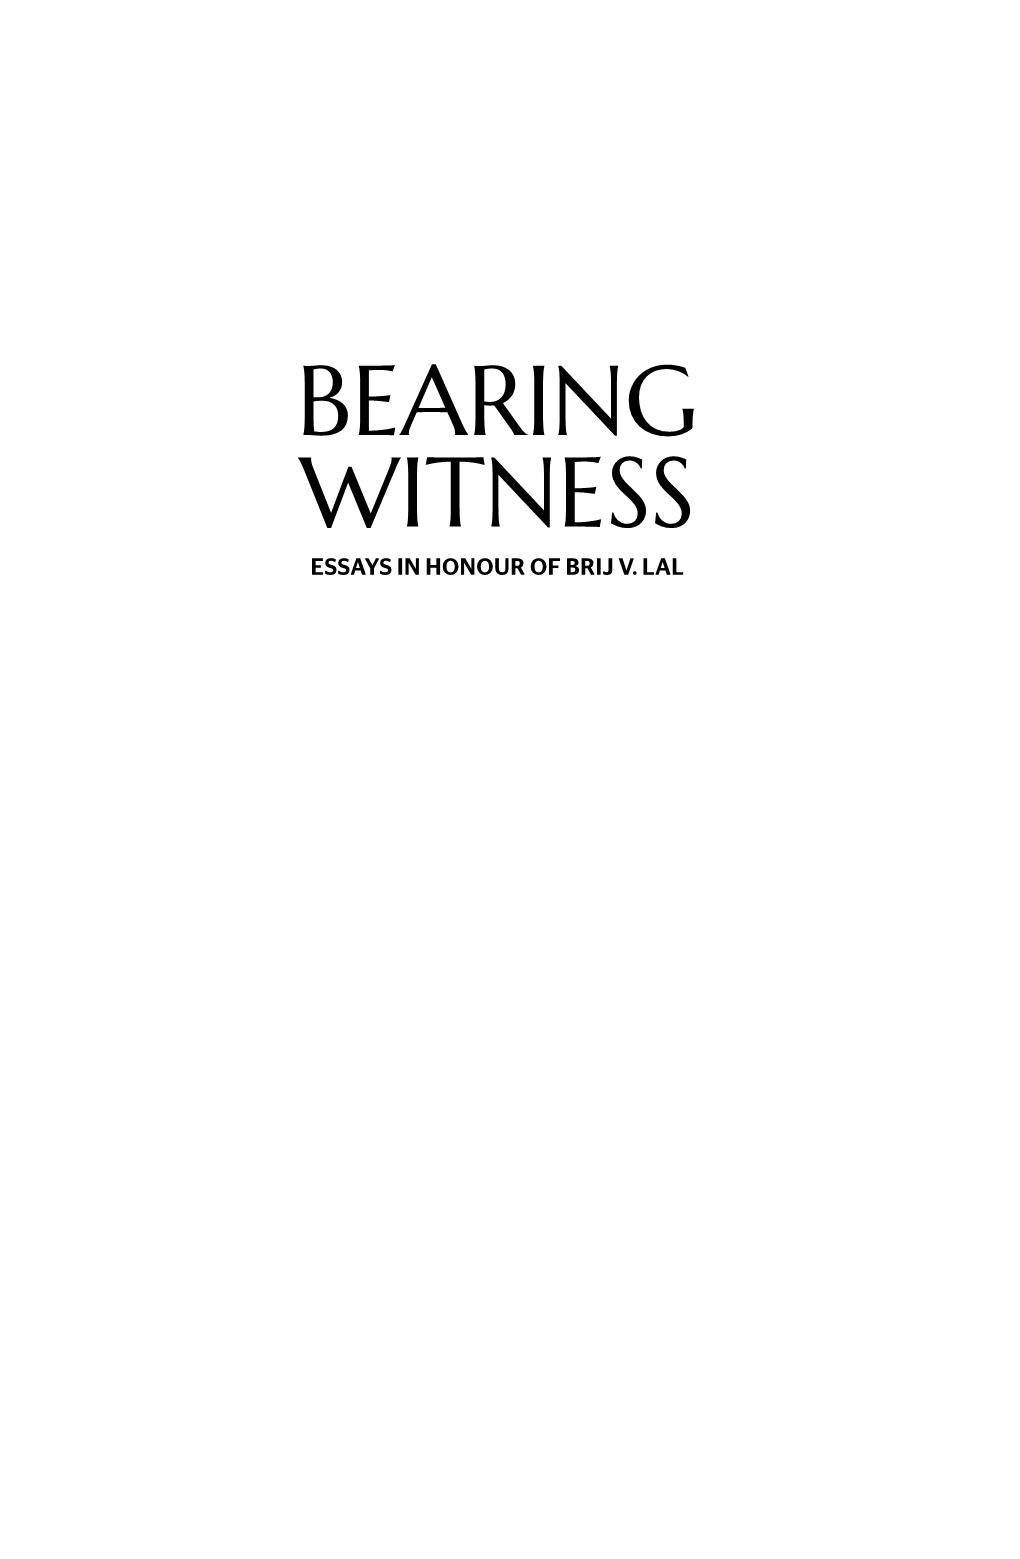 Bearing Witness: Essays in Honour of Brij V.Lal